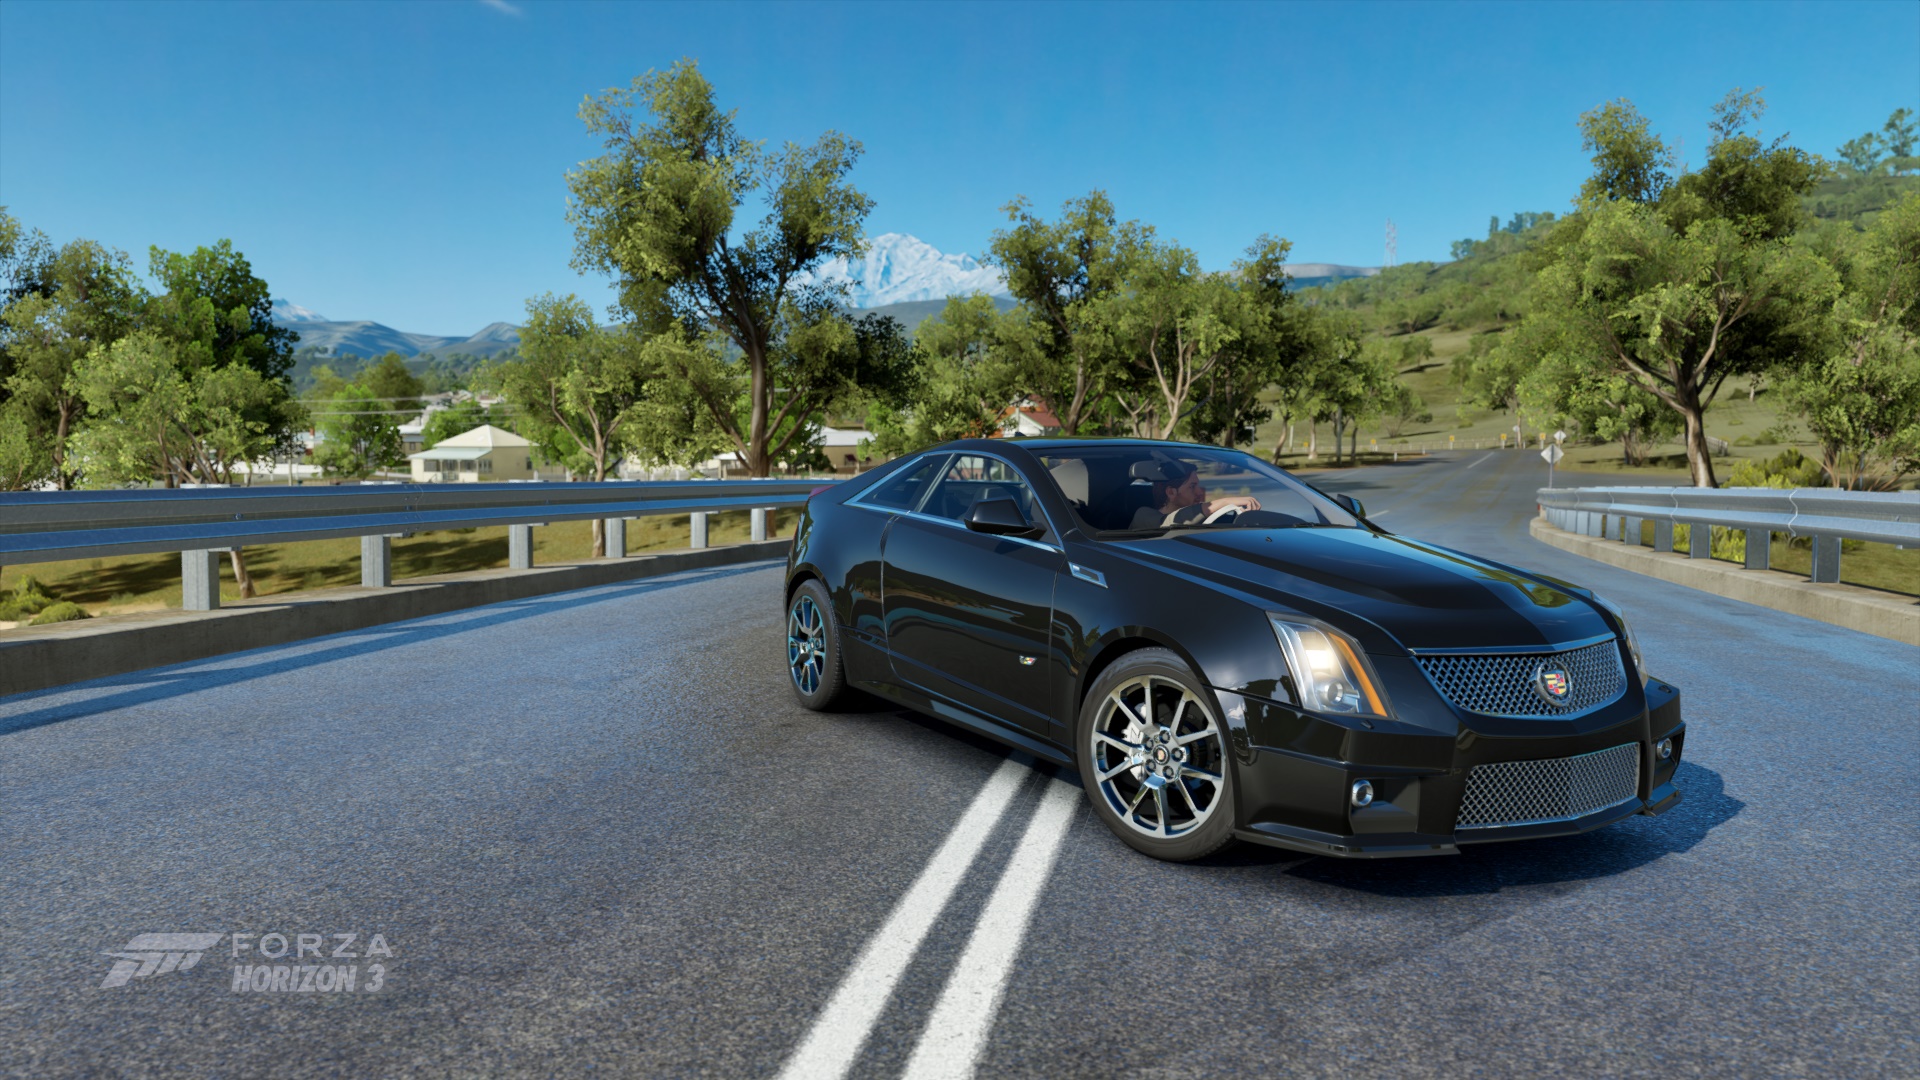 Wallpaper Cadillac, car, Forza Horizon 3, video game